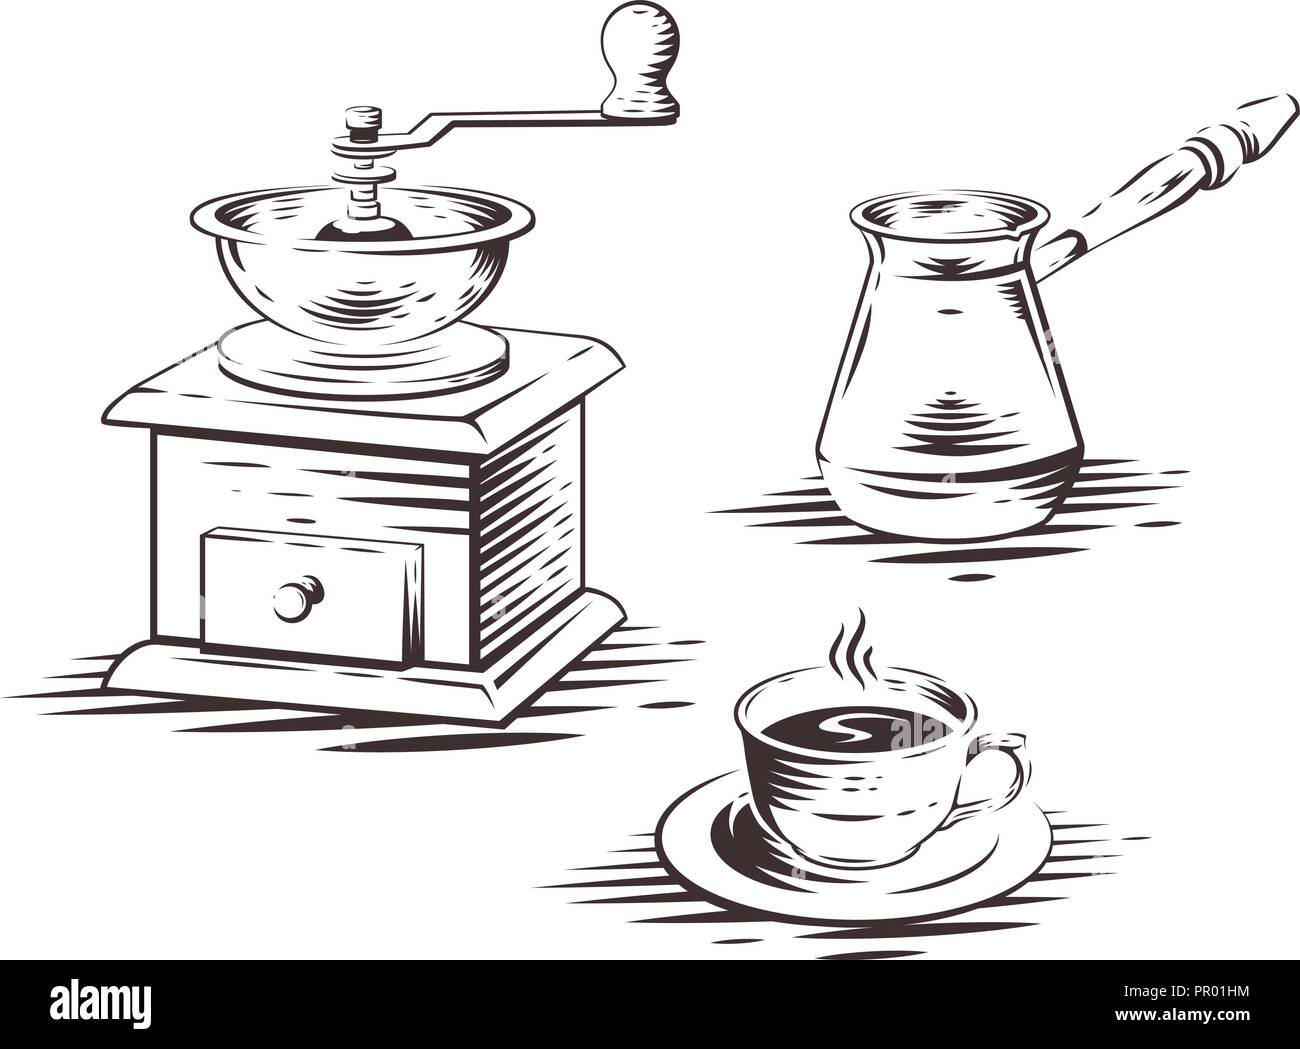 Cafetera con molinillo de café manual cafetera, prensa y taza de café. Ilustración vectorial. Ilustración del Vector